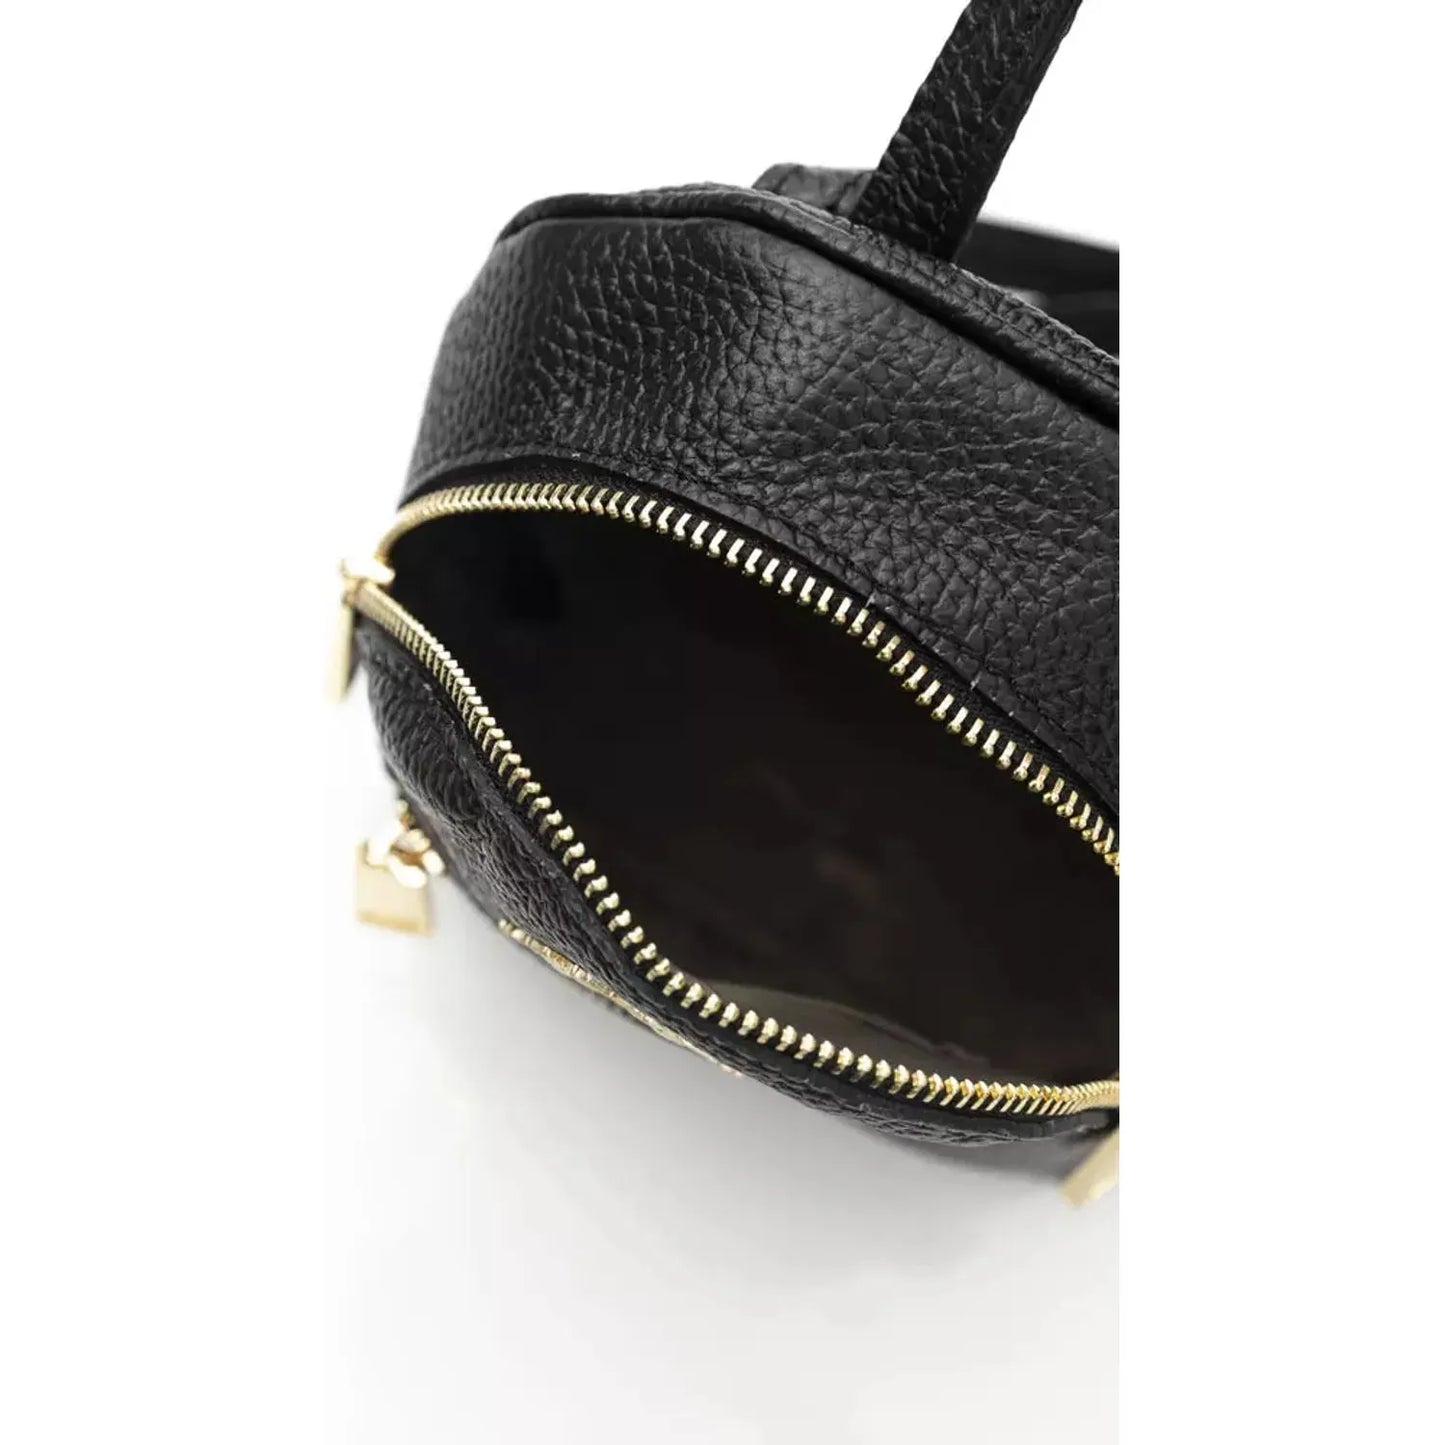 La Martina Elegant Leather Messenger Bag with Logo Detailing black-messenger-bag product-22973-588504825-18-43285c10-83b.webp